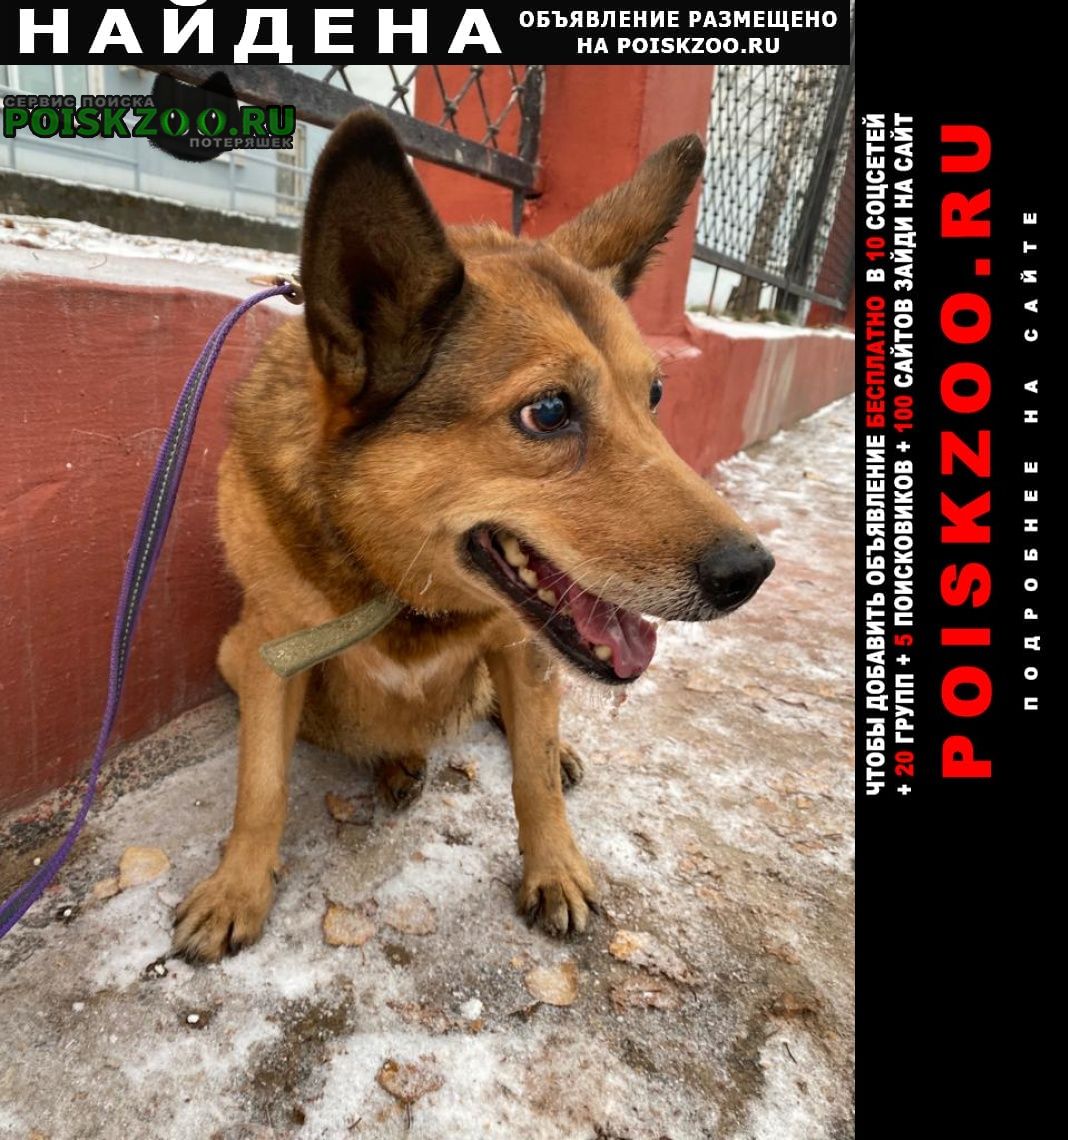 Пермь Найдена собака девочка рыжая в ошейнике цвета хаки.